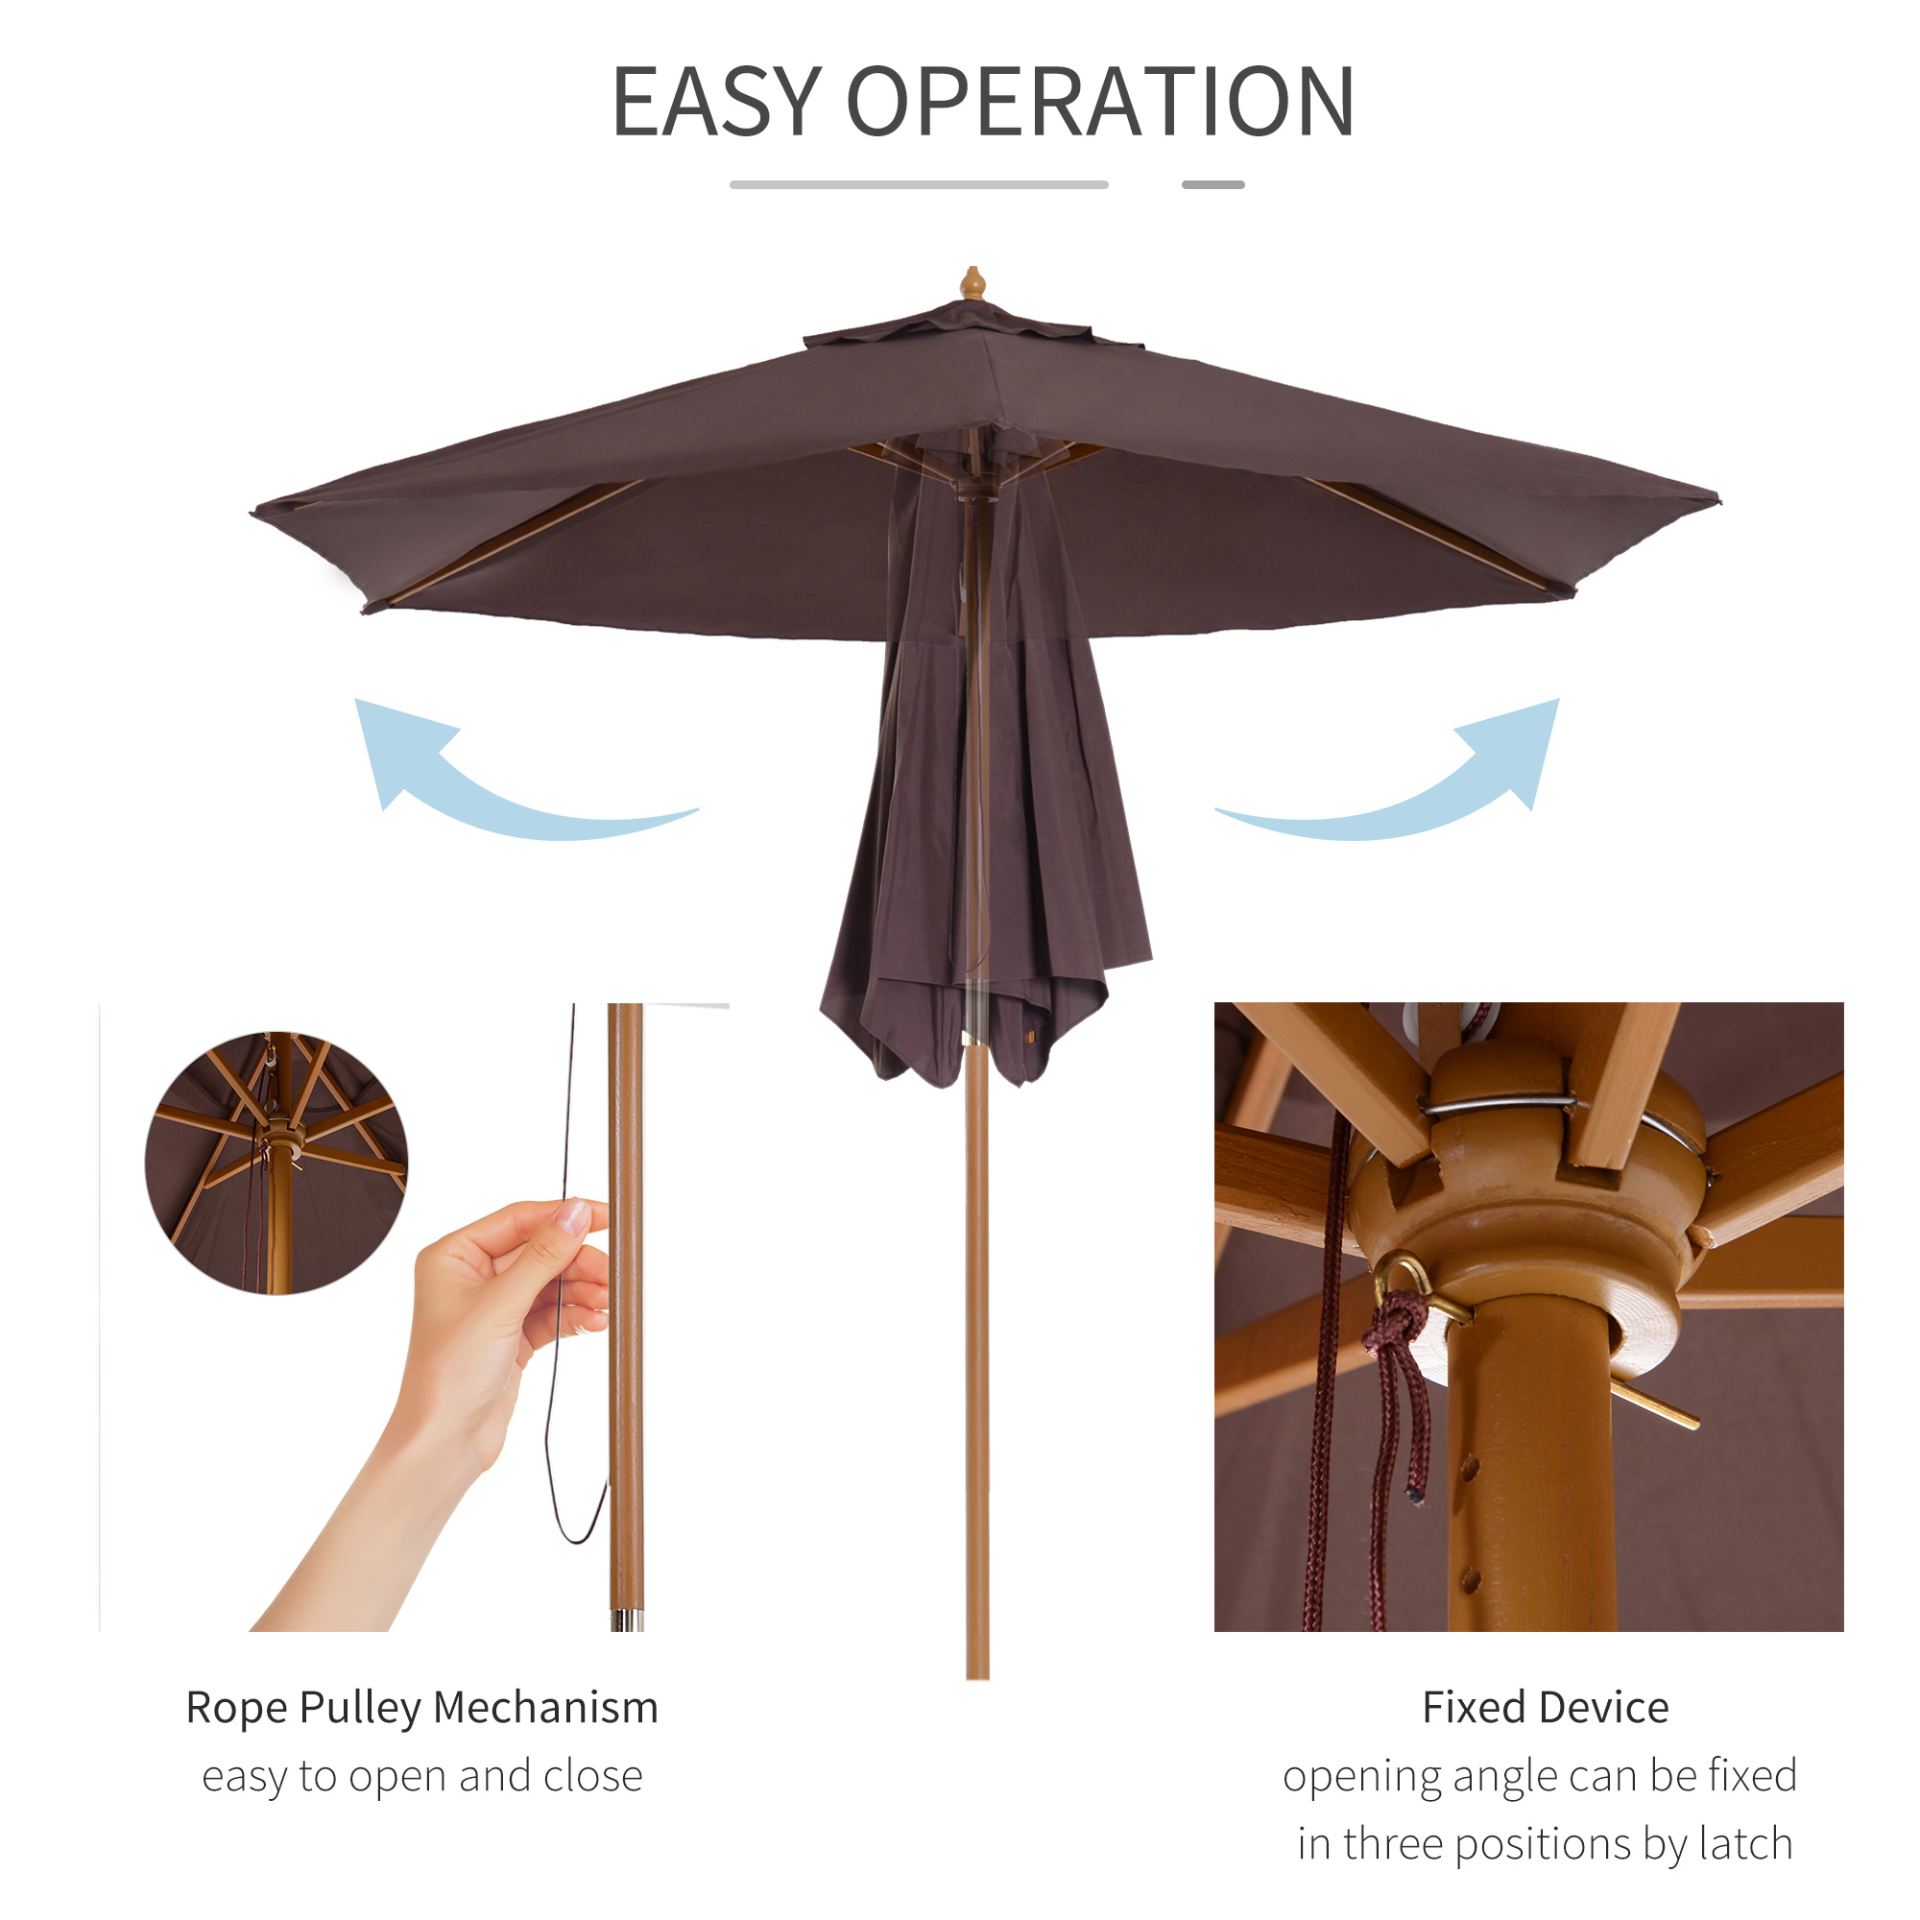 Outsunny 2.5m Wood Garden Parasol Sun Shade Patio Outdoor Wooden Umbrella Canopy Coffee